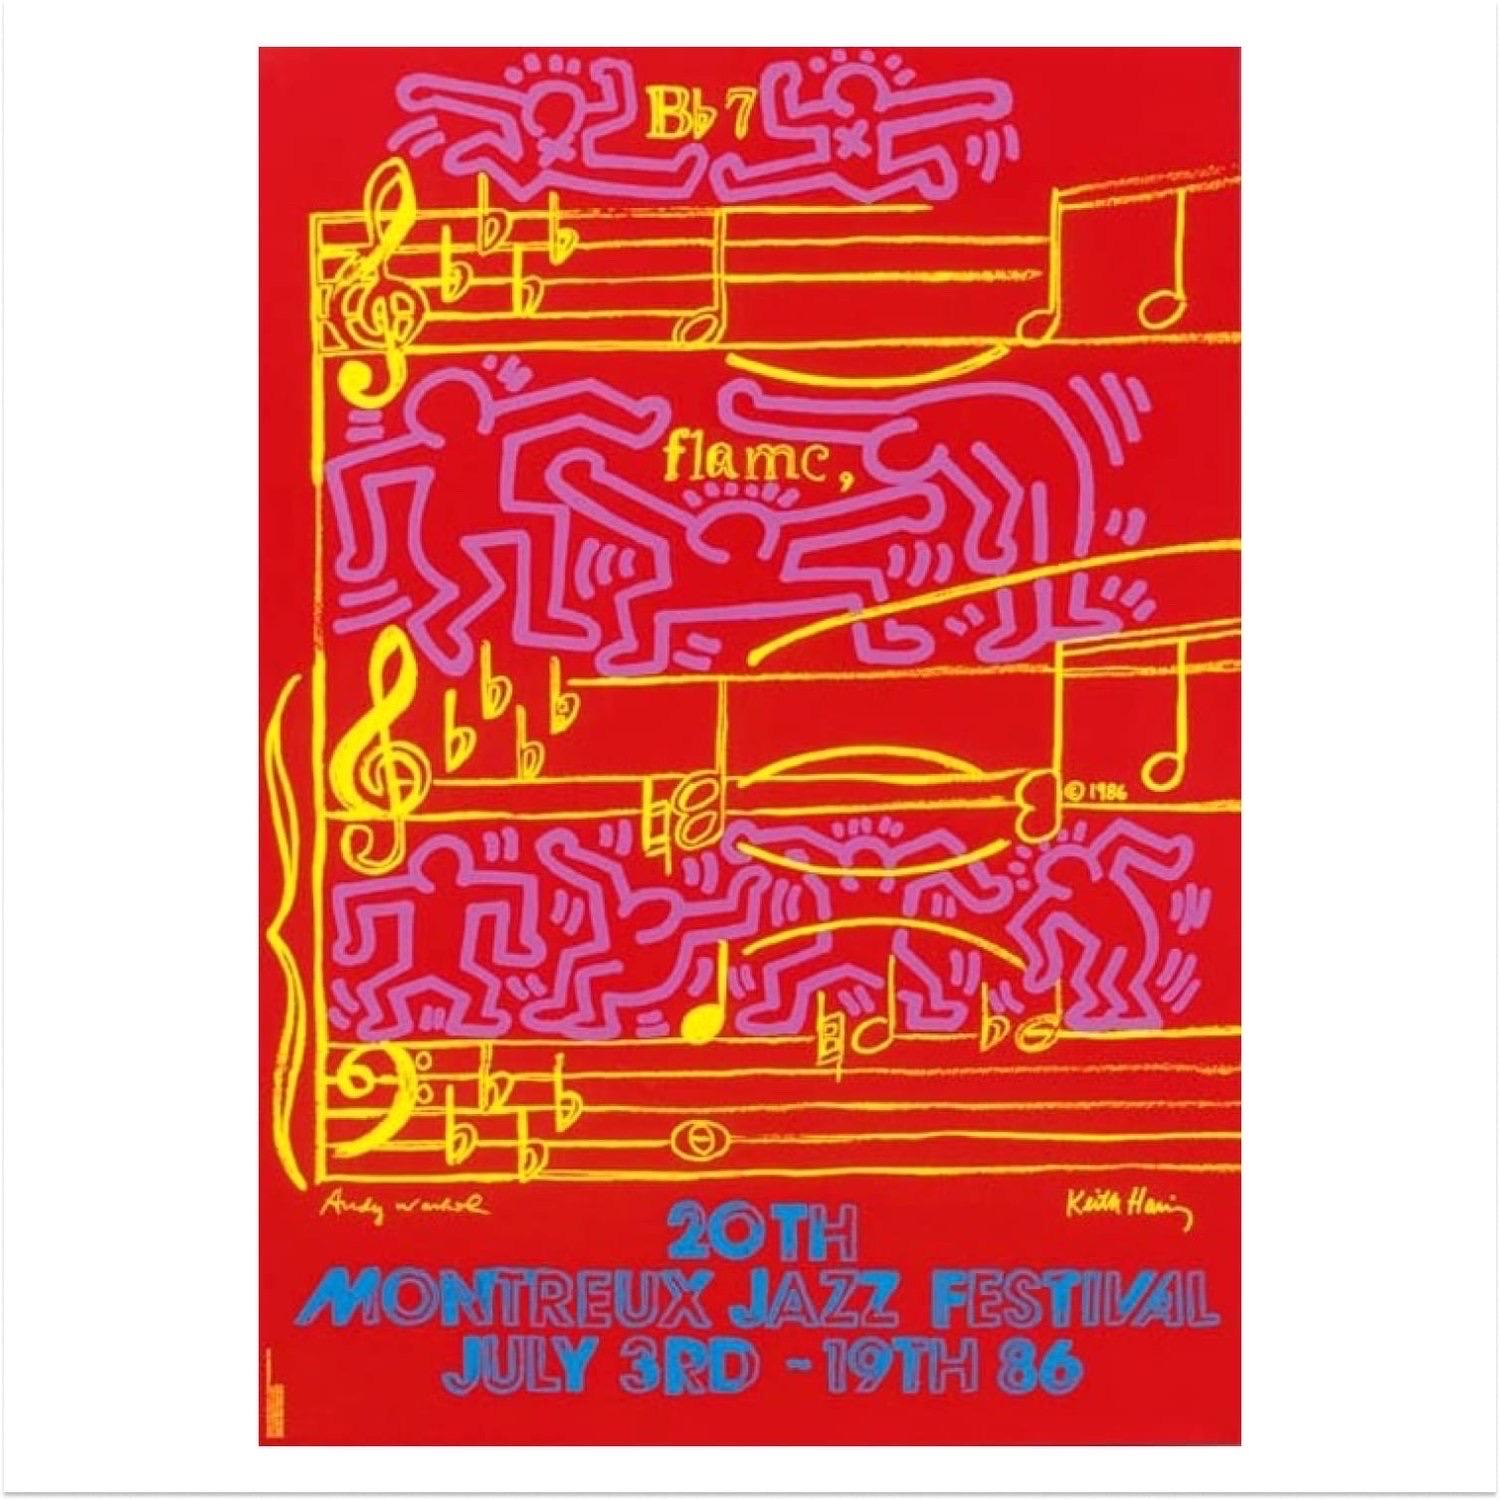 Keith Haring y Andy Warhol, Festival de Jazz de Montreux 1986

Serigrafía en colores sobre papel estucado semimate de 250 gr.

Impreso por Albin Uldry

Placa firmada por Keith Hairng y Andy Warhol 

70 x 100 cm (27.6 x 39.4 in) 

Celebración de los